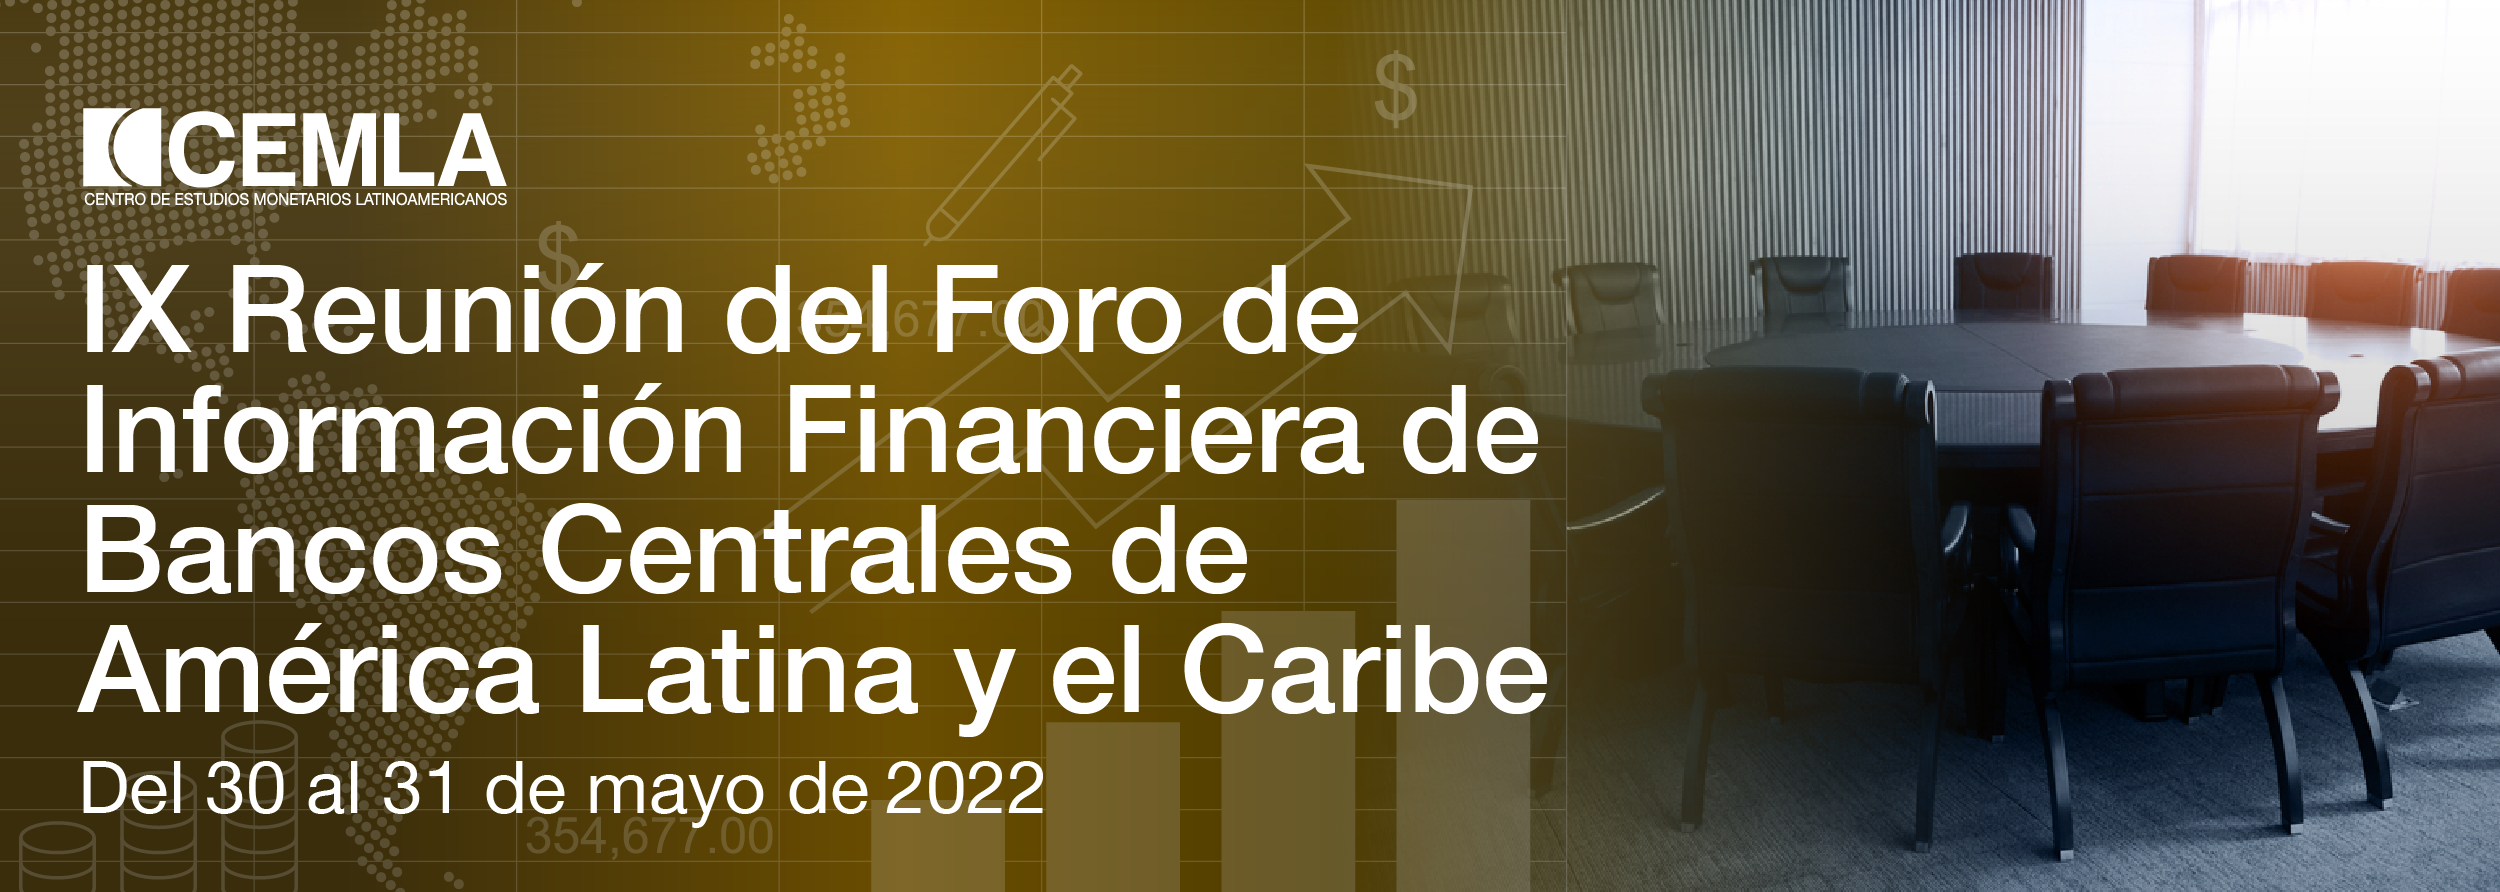 IX Reunión del Foro de Información Financiera de Bancos Centrales de América Latina y el Caribe